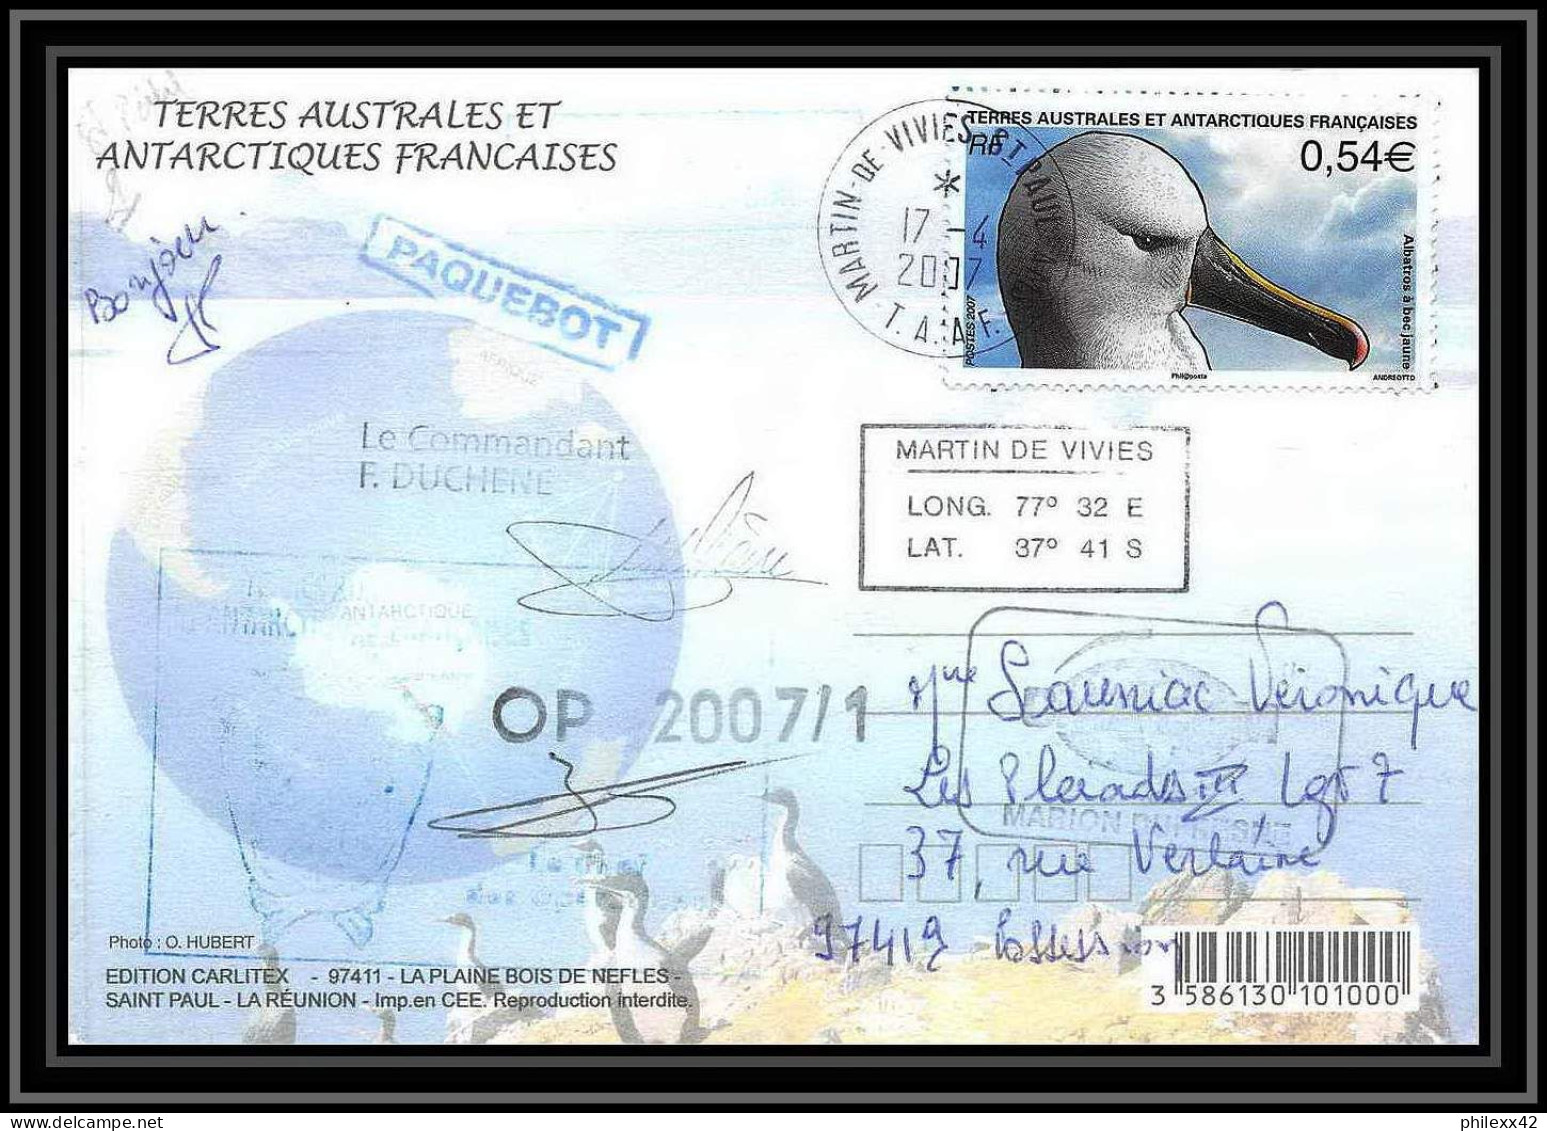 2756 ANTARCTIC Terres Australes (taaf)-carte Postale Dufresne 2 Signé Signed Op 2007/1 N°467 ST PAUL 17/4/2007 - Storia Postale